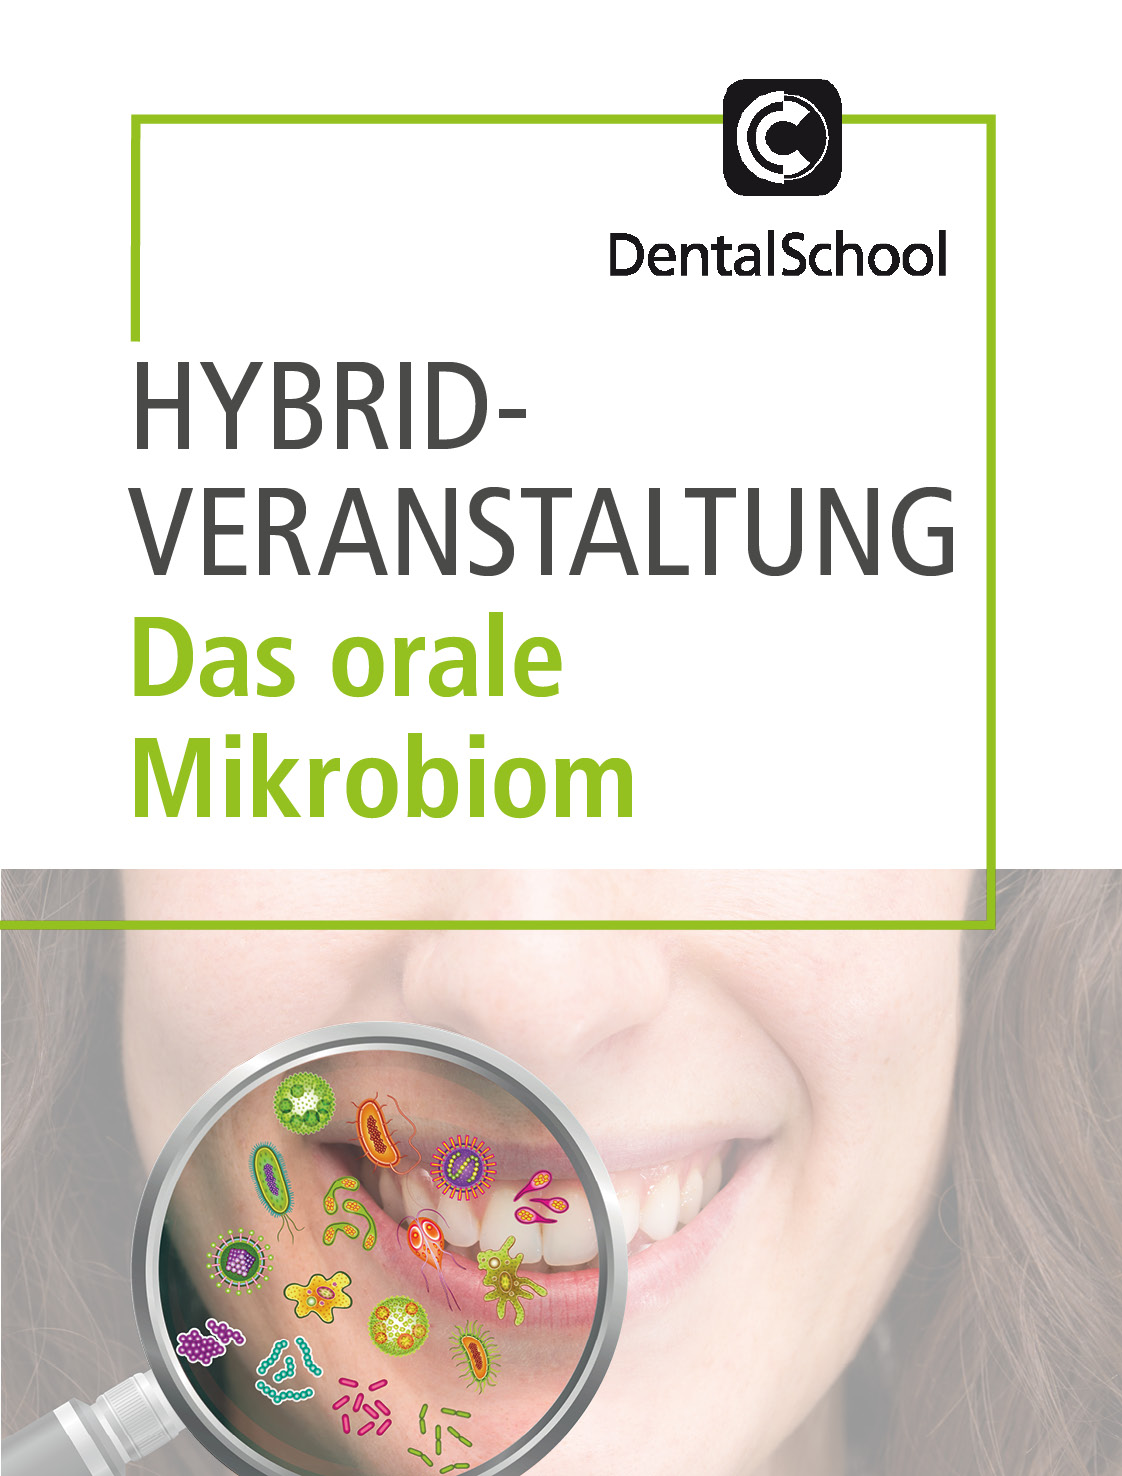 Das orale Mikrobiom - orale Mikrobiome und zahnärztliche Prävention: Ein Paradigmenwechsel im Verständnis zahnärztlicher Prävention entsteht.